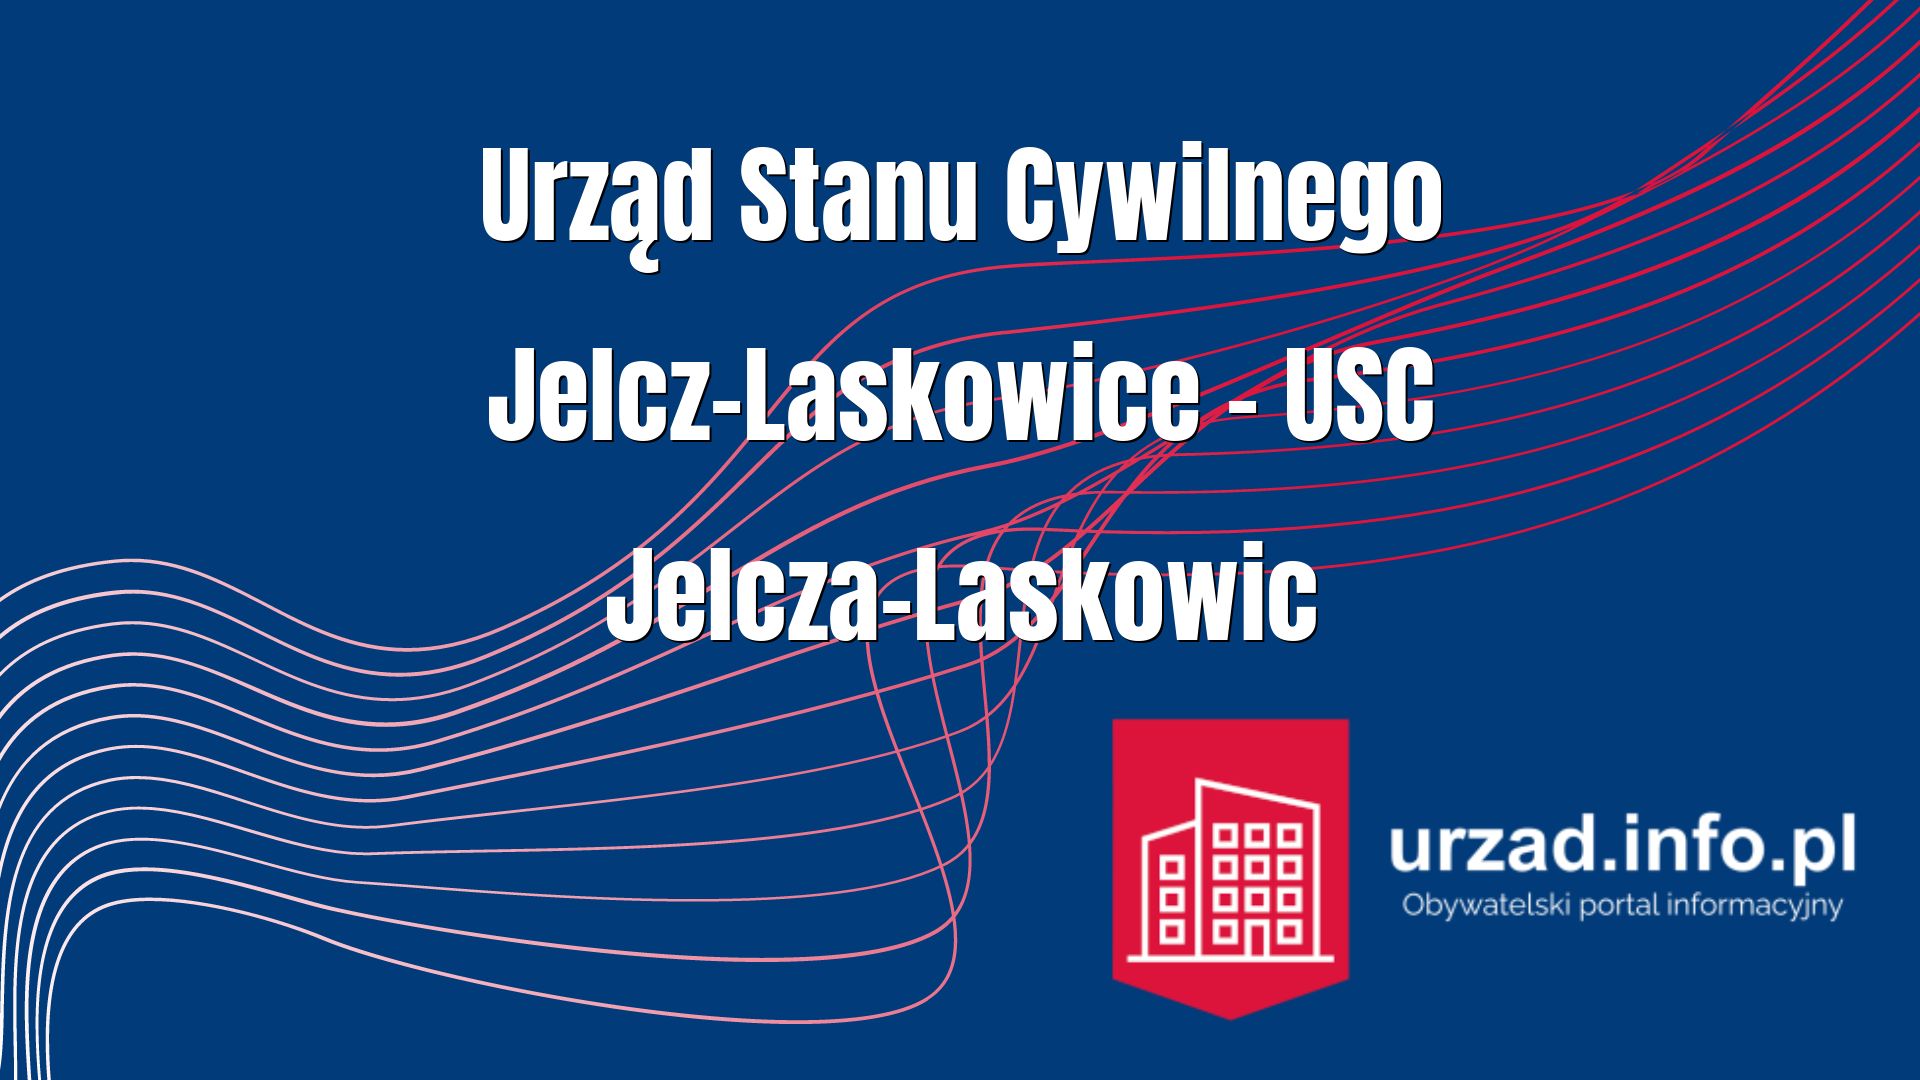 Urząd Stanu Cywilnego Jelcz-Laskowice – USC Jelcza-Laskowic